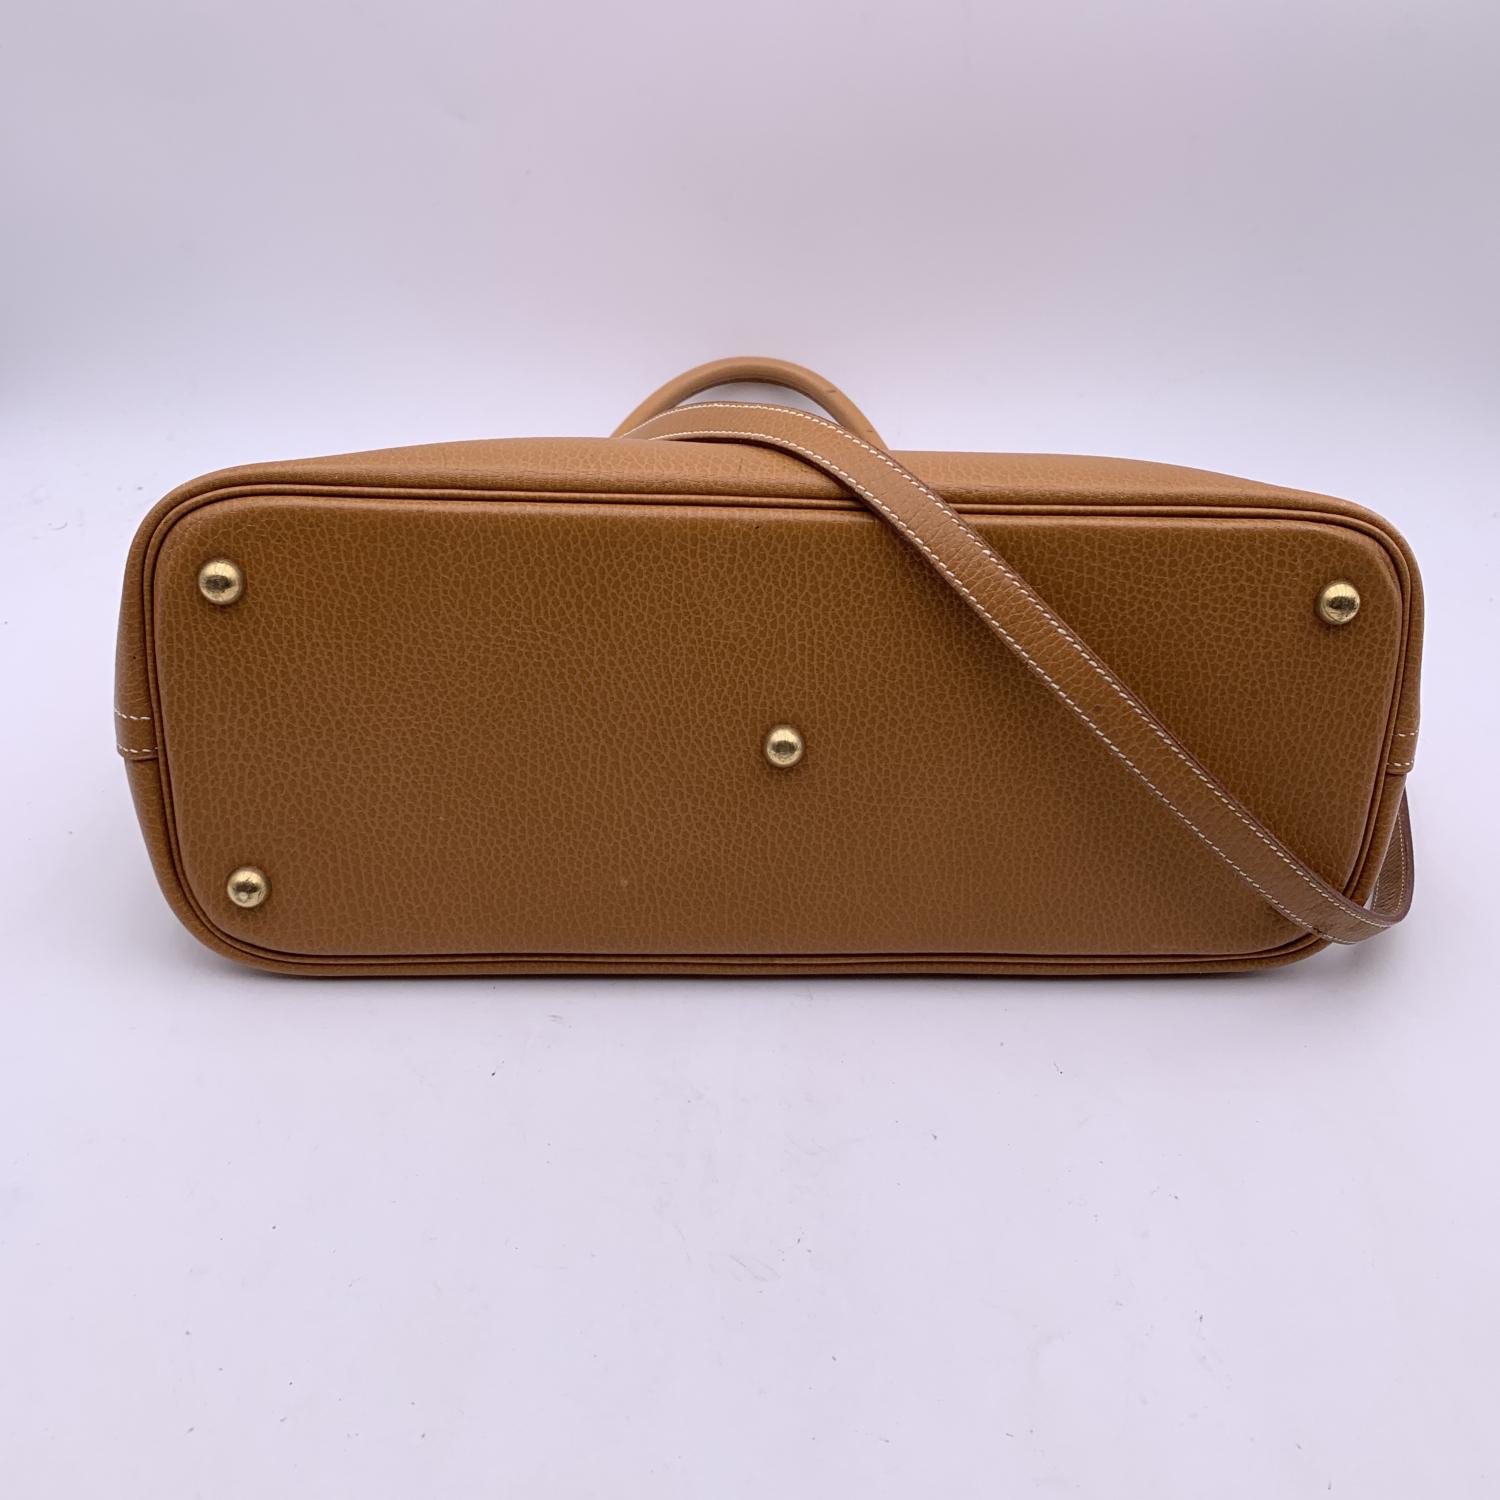 Hermes Vintage 1994 Beige Leather Bolide 35 Satchel Bag with Strap 4